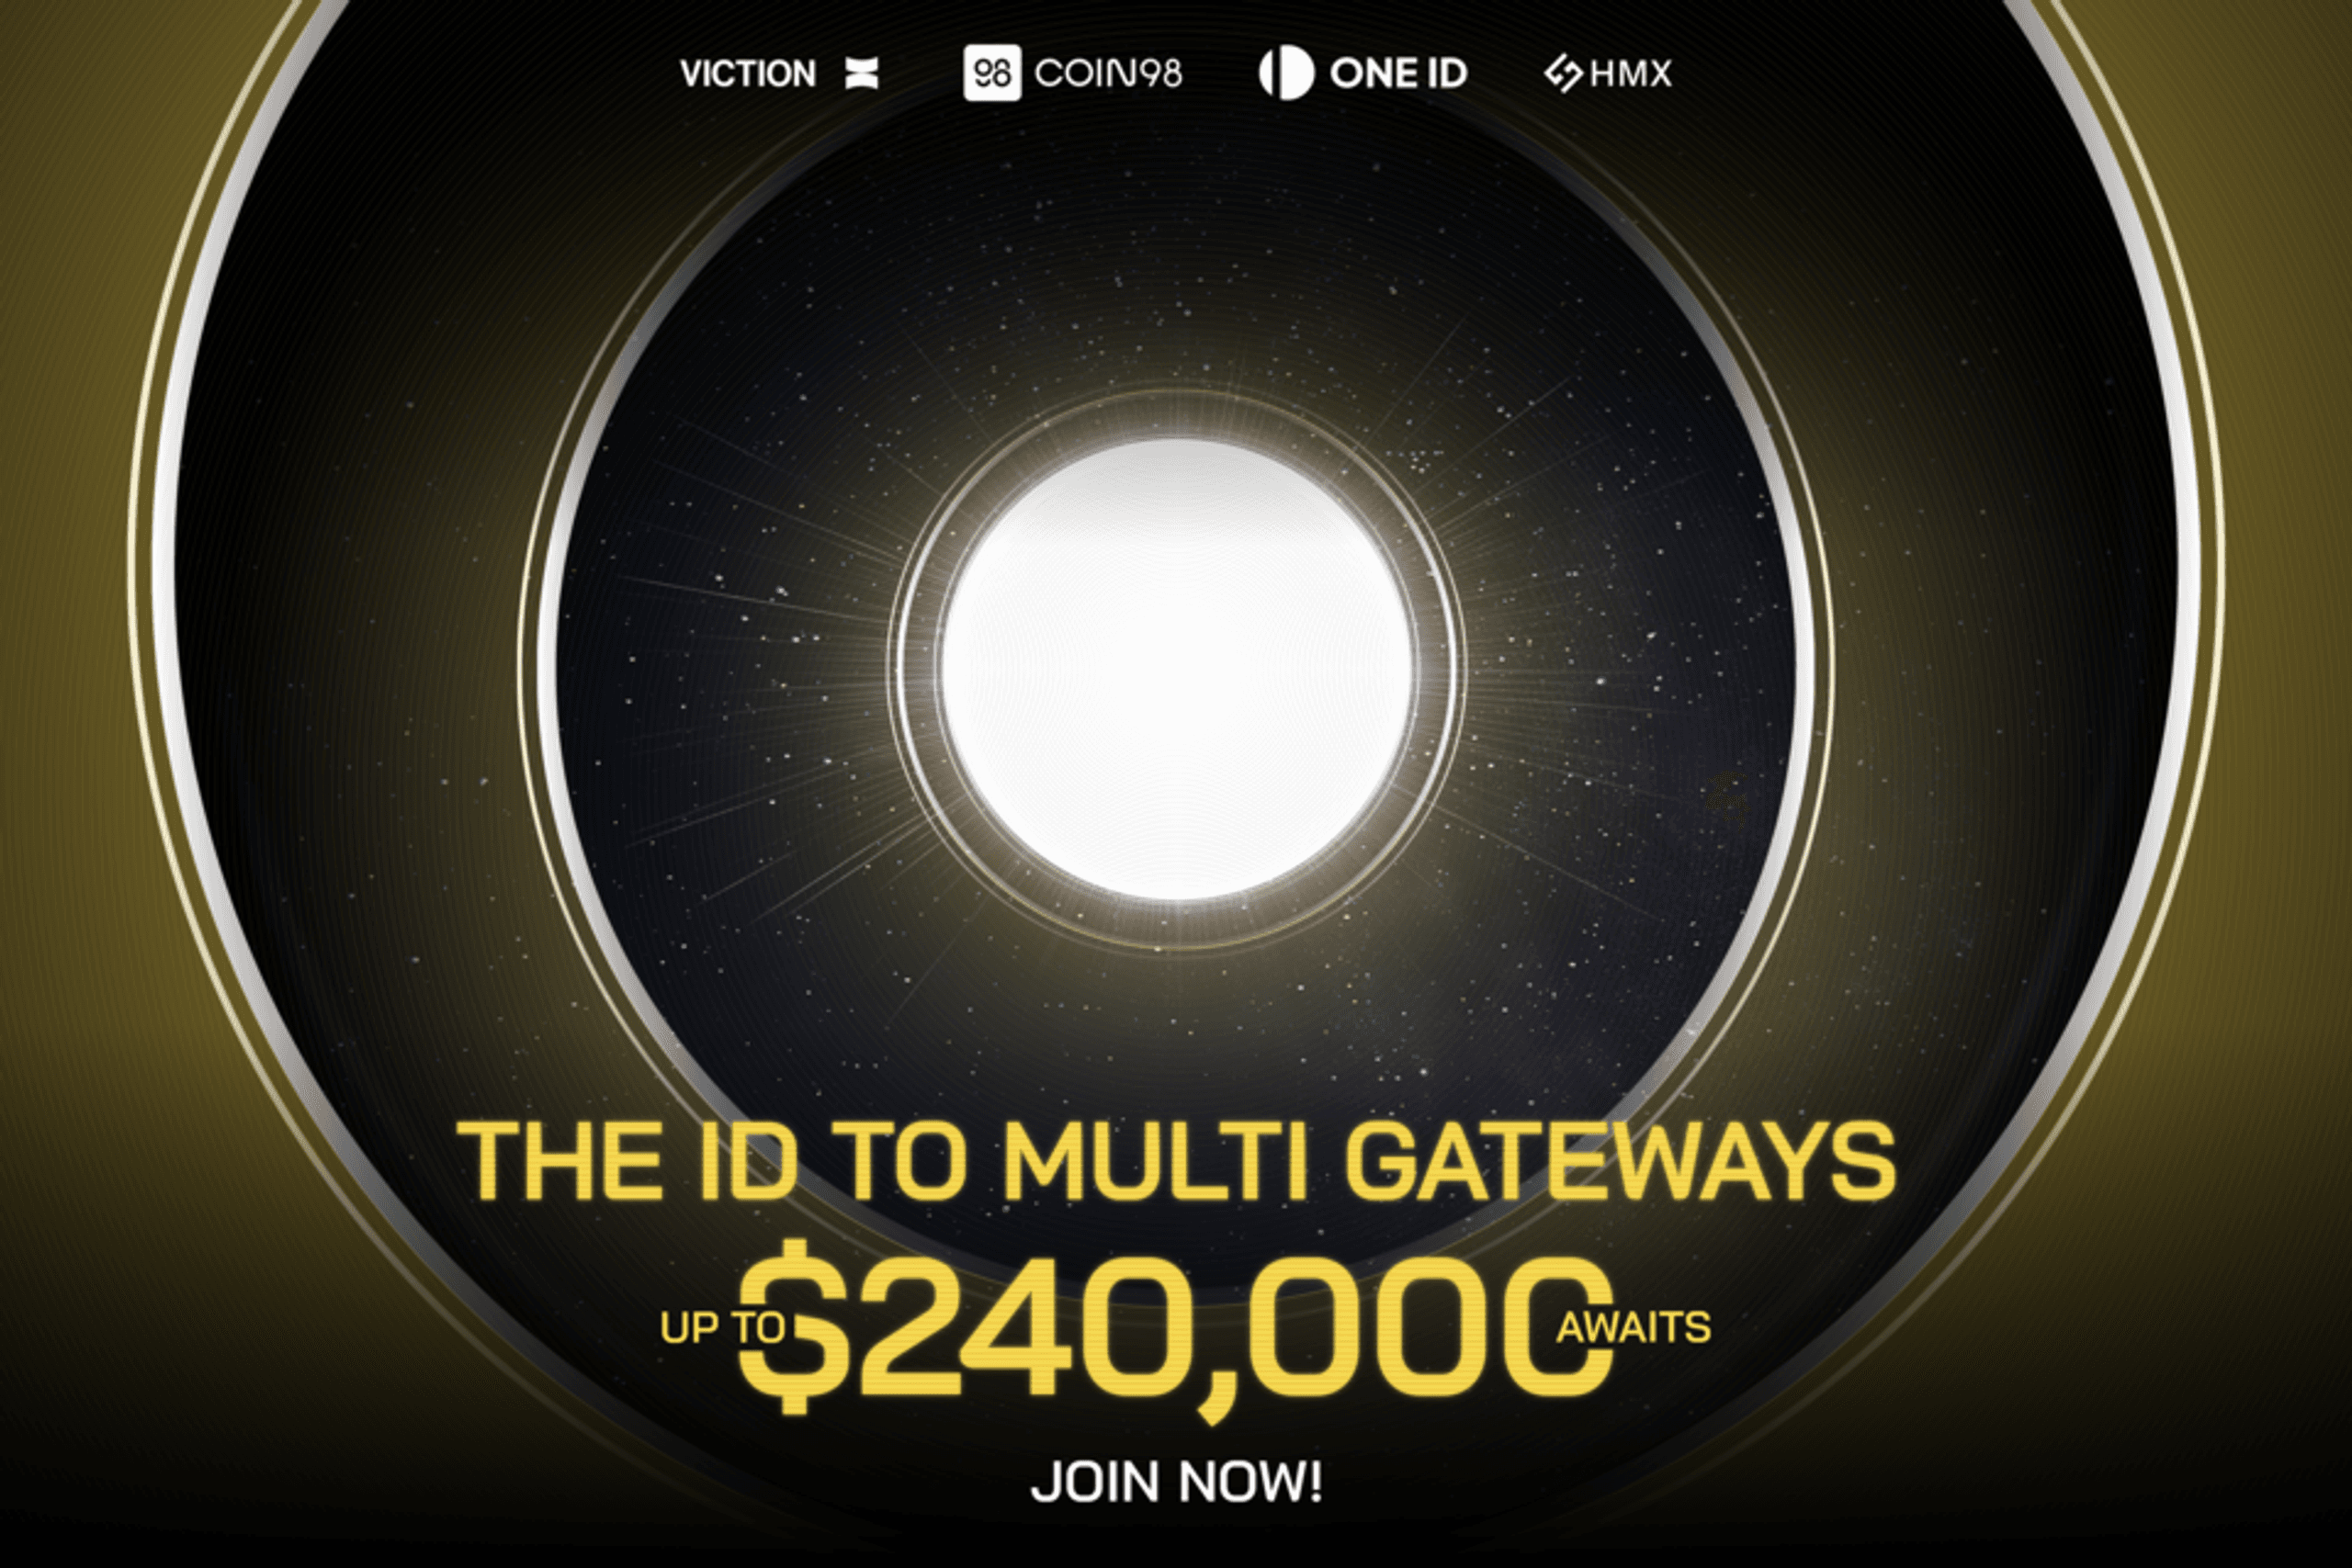 Nhận thưởng lên đến $240,000 với sự kiện “The ID to Multi Gateways”